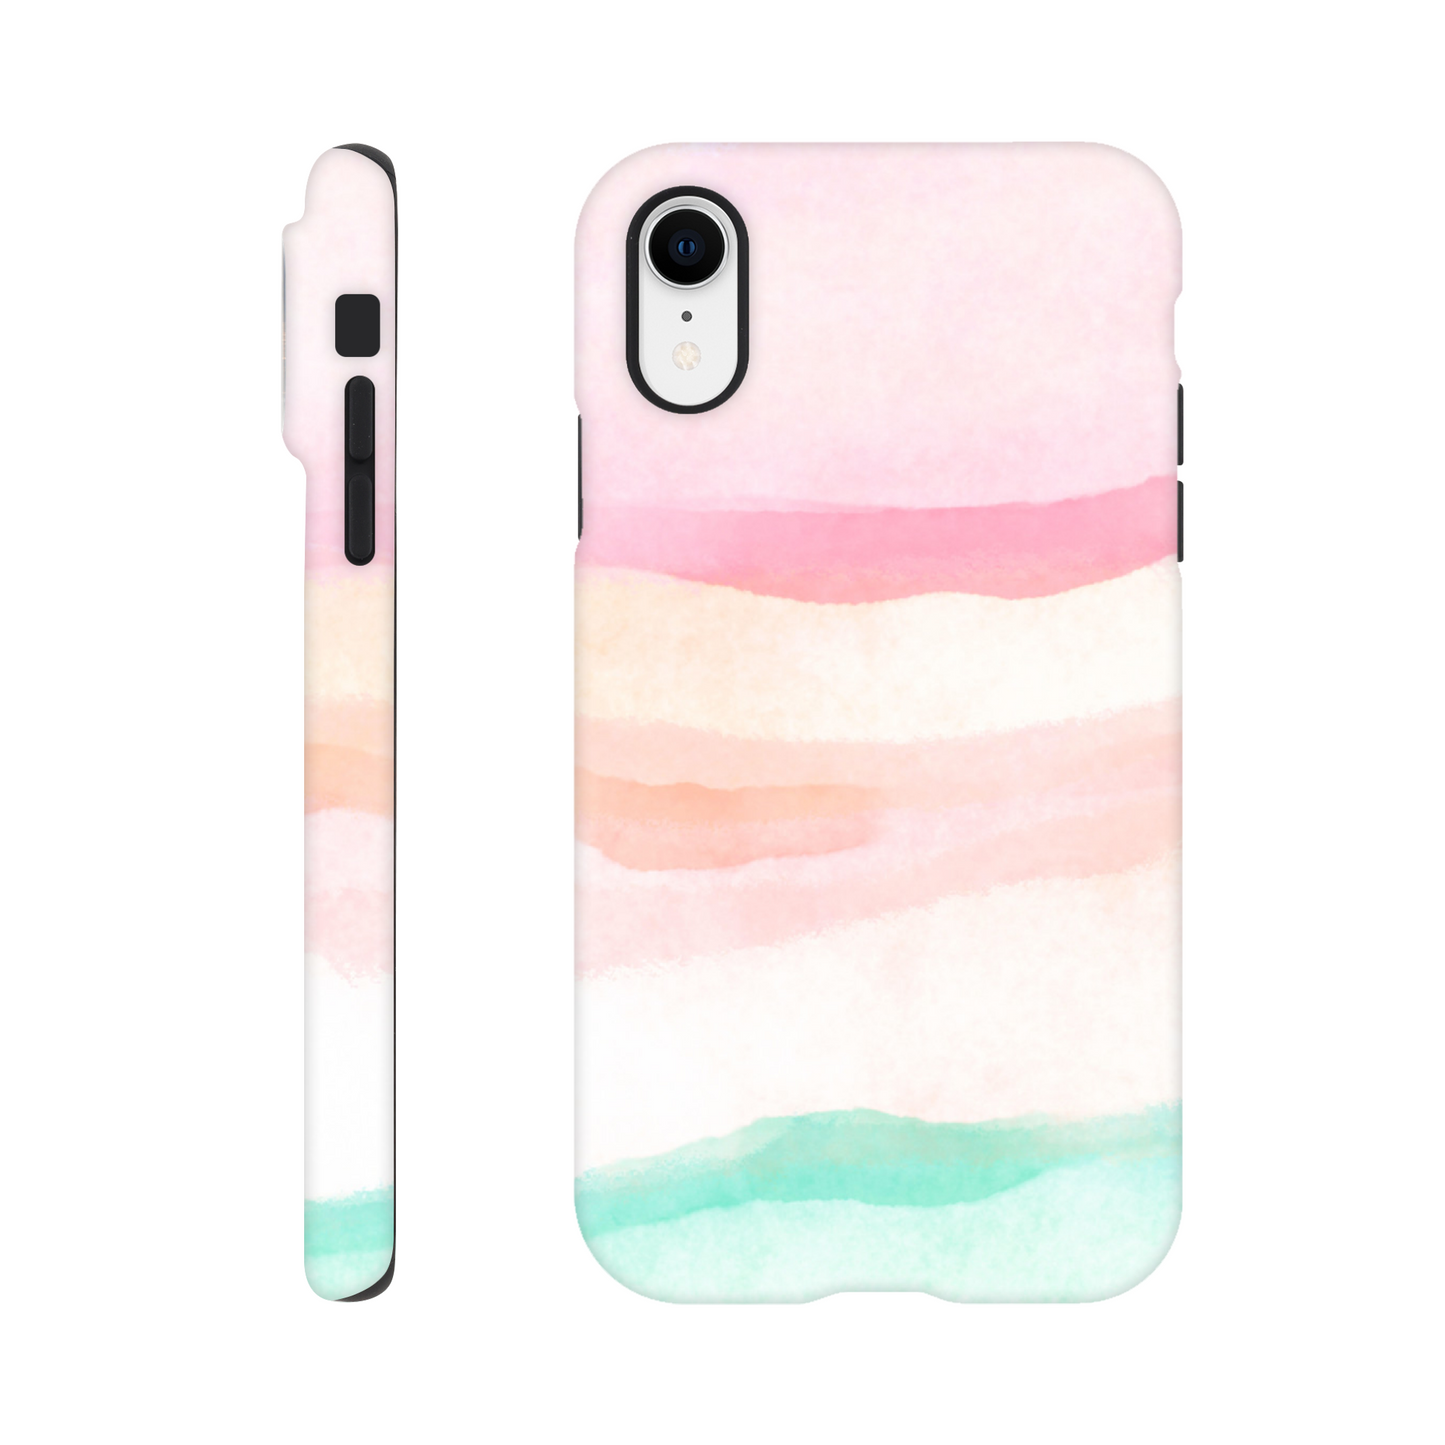 Pastels - Tough case iPhone XR Phone Case